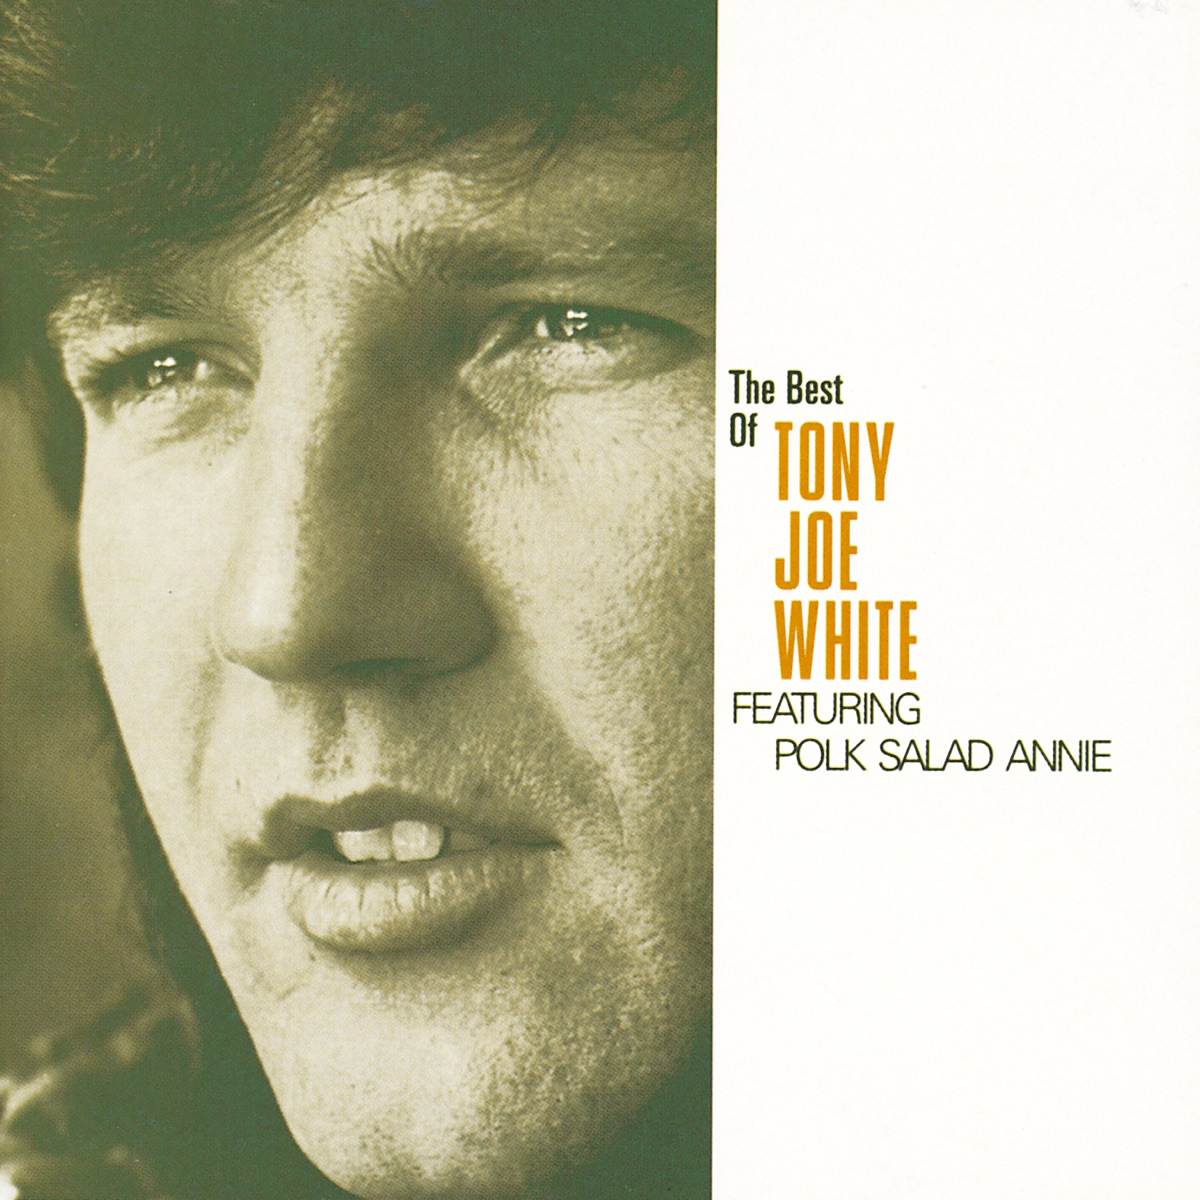 The Best of Tony Joe White by Tony Joe White on Apple Music